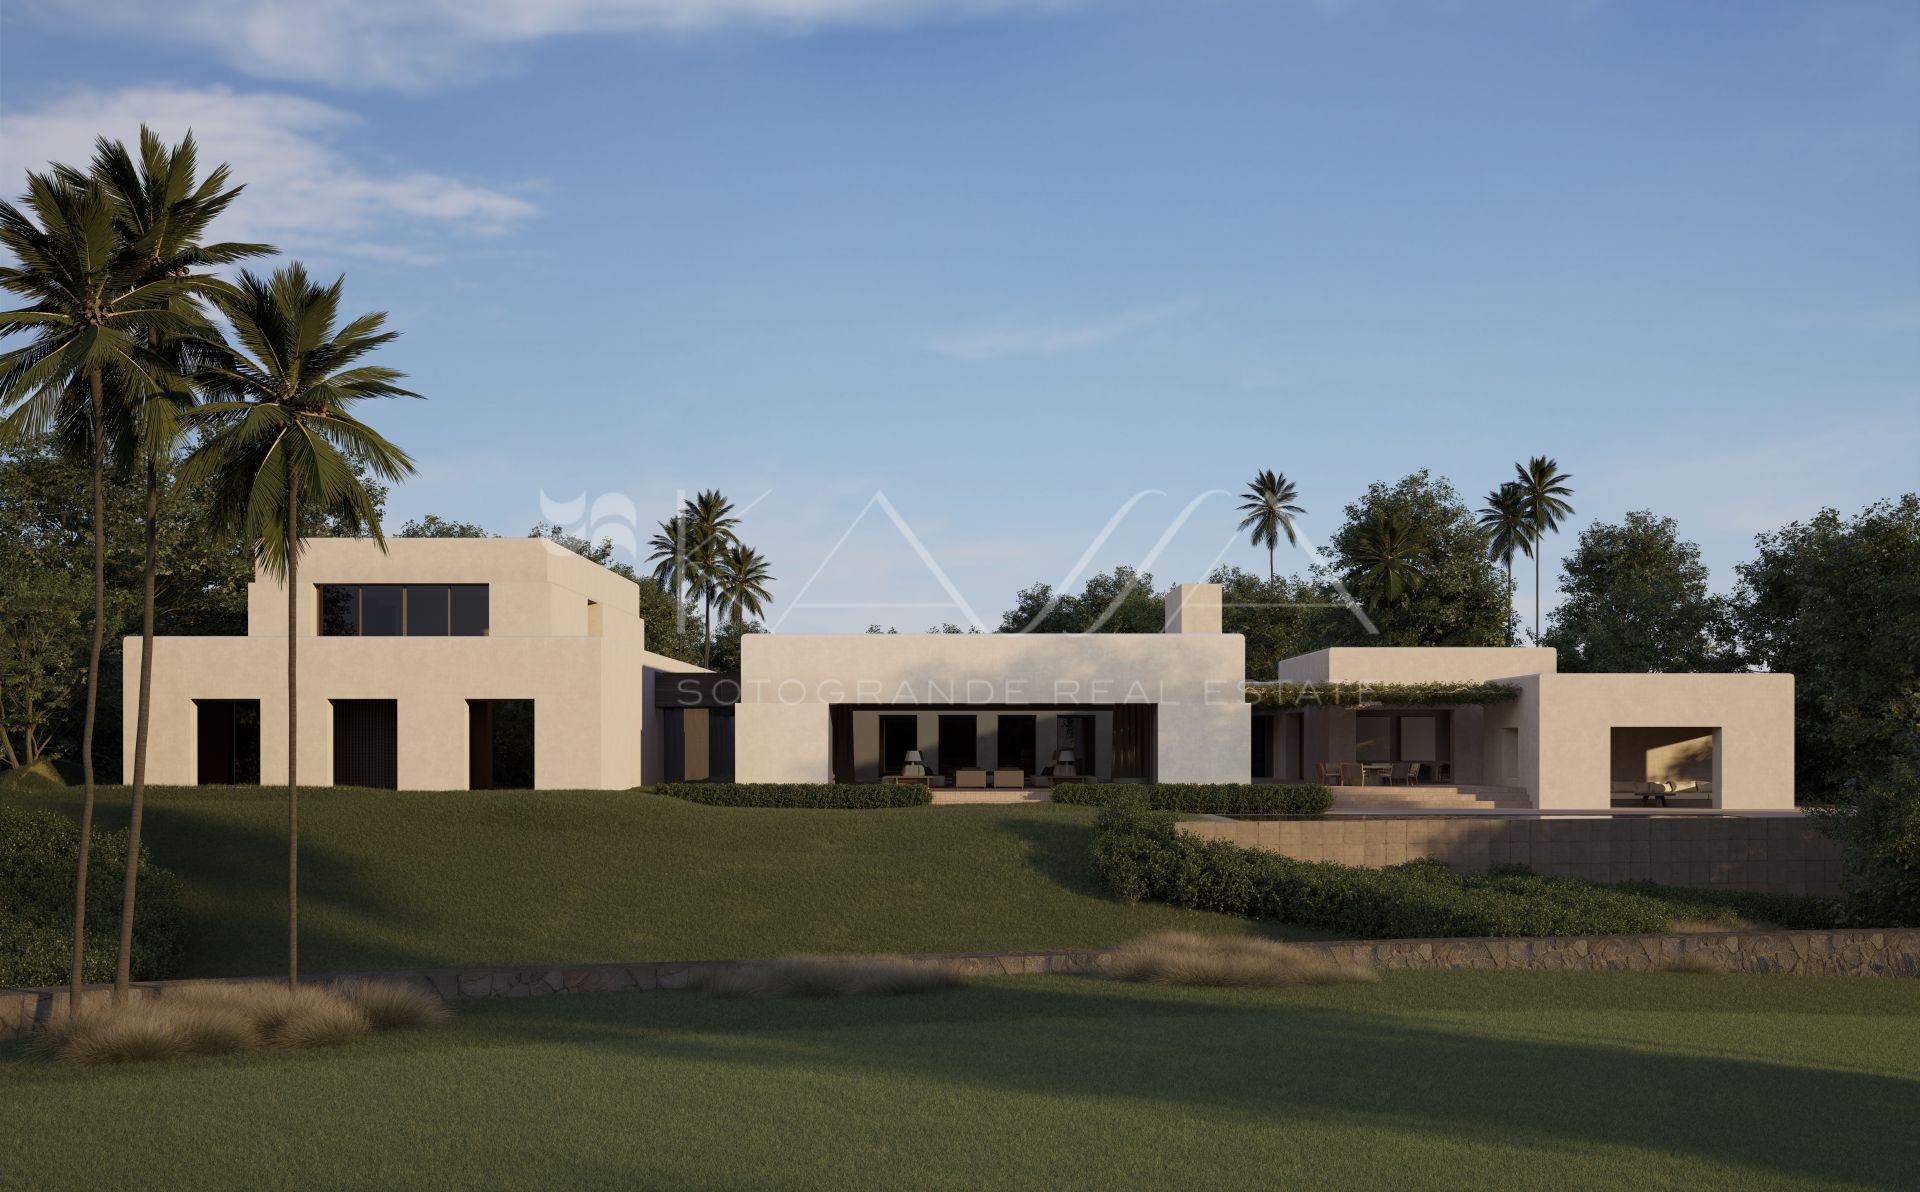 Villa Duarte, un magnífico proyecto de OOAA Arquitecto en uno de los mejores enclaves de Sotogrande. Con vistas al Real Club de Golf de Sotogrande.